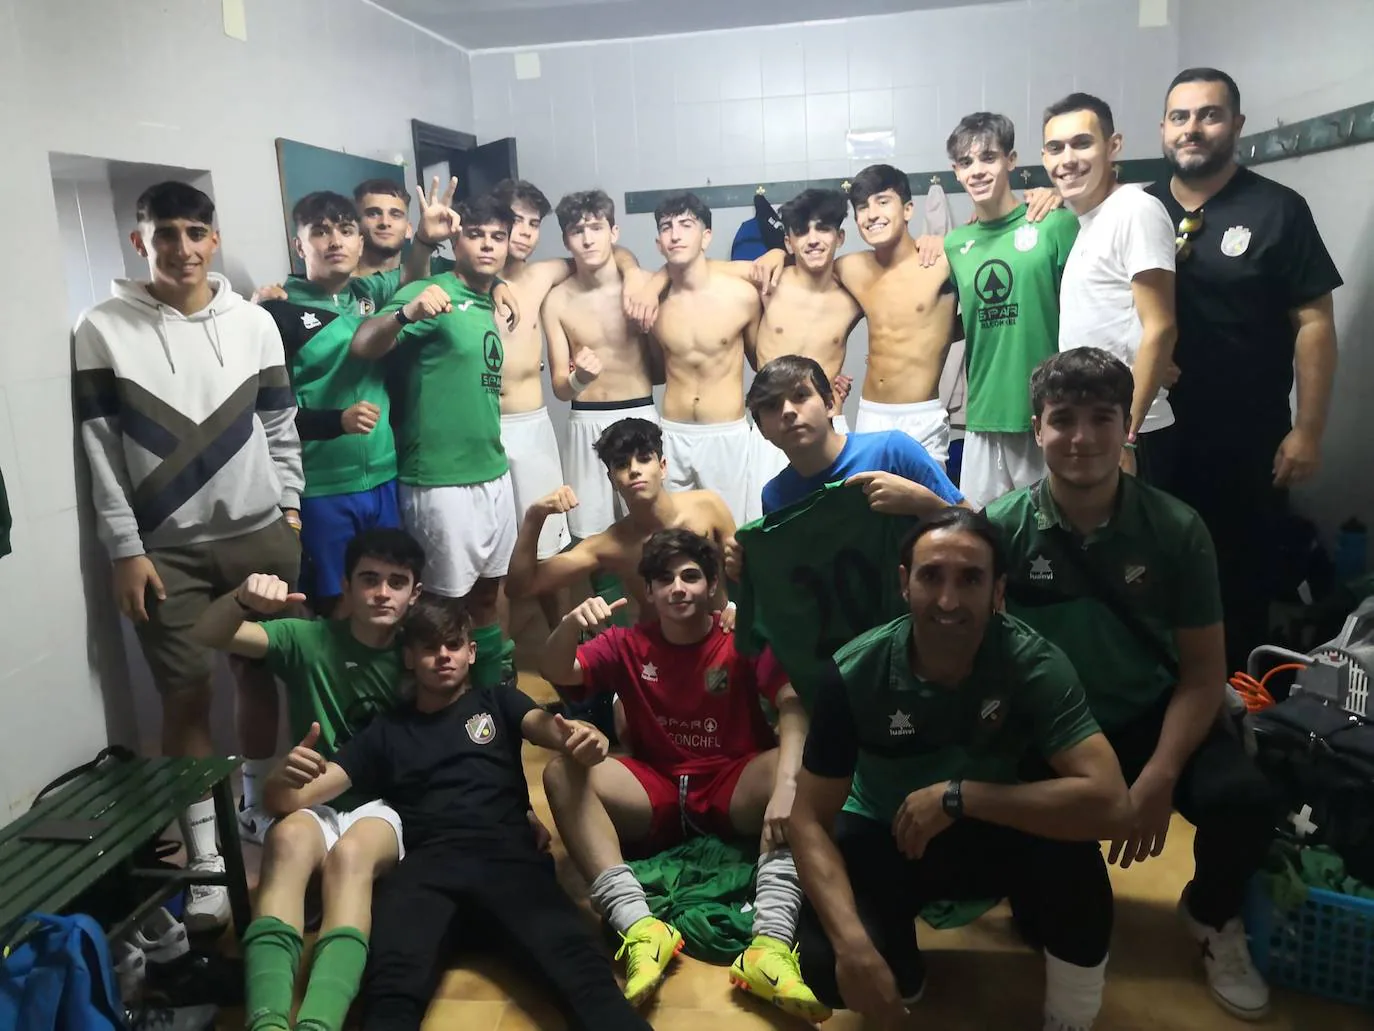 El equipo juvenil gana por goleada (10-0) al Sport Extremadura